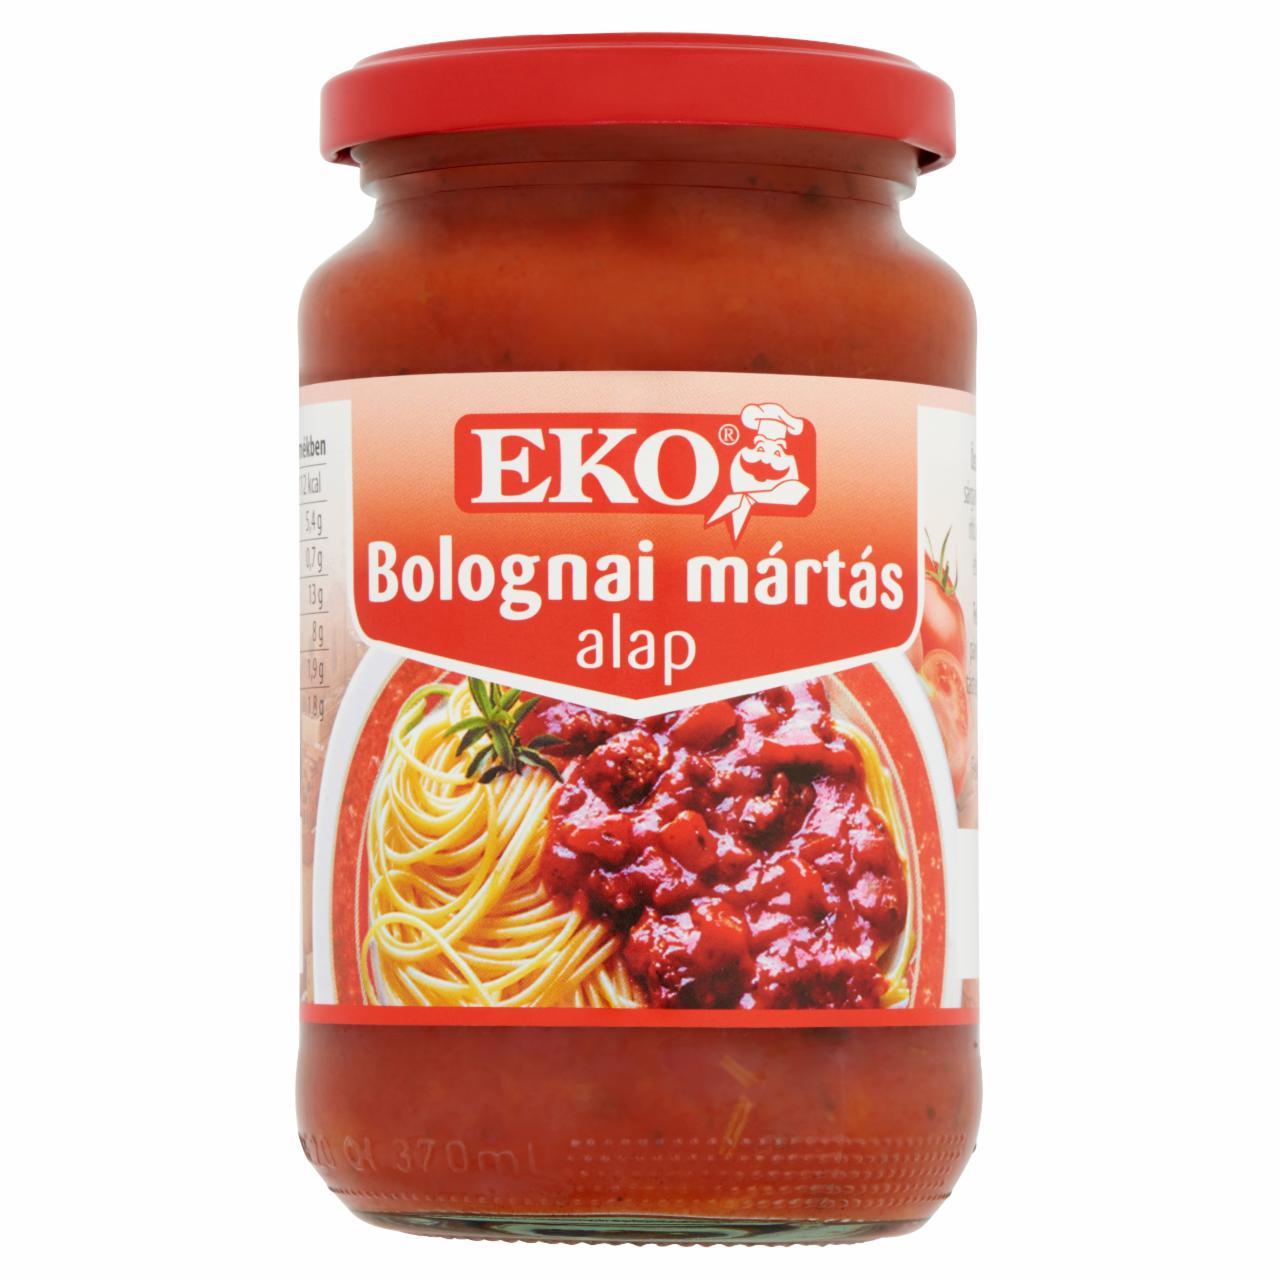 Képek - Eko bolognai mártás alap 360 g